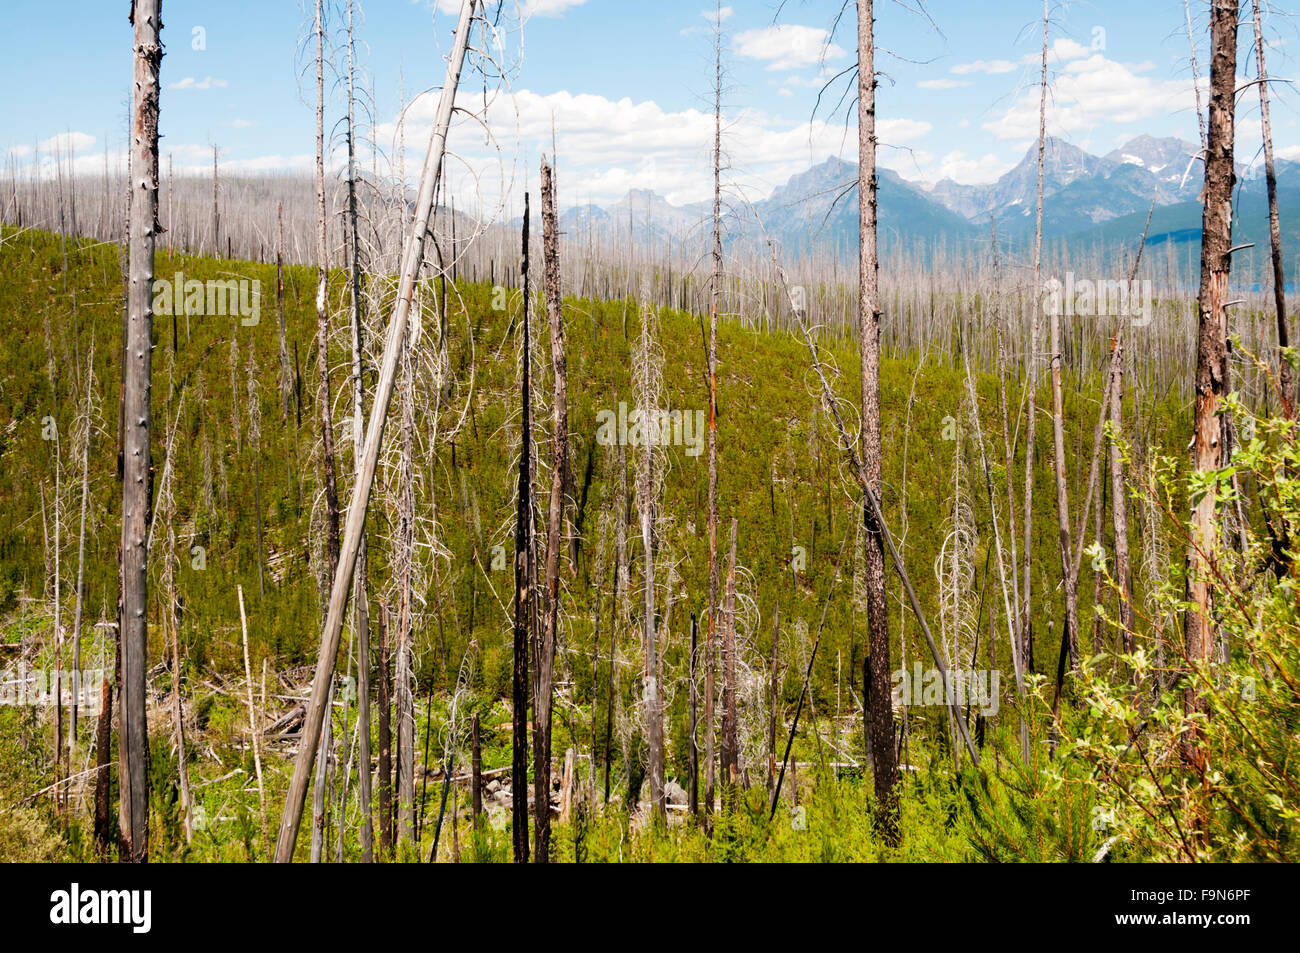 La nouvelle croissance apparaissant par reste d'arbres morts brûlés dans l'incendie de 2003 Robert. Le Glacier National Park, Montana, USA. Banque D'Images